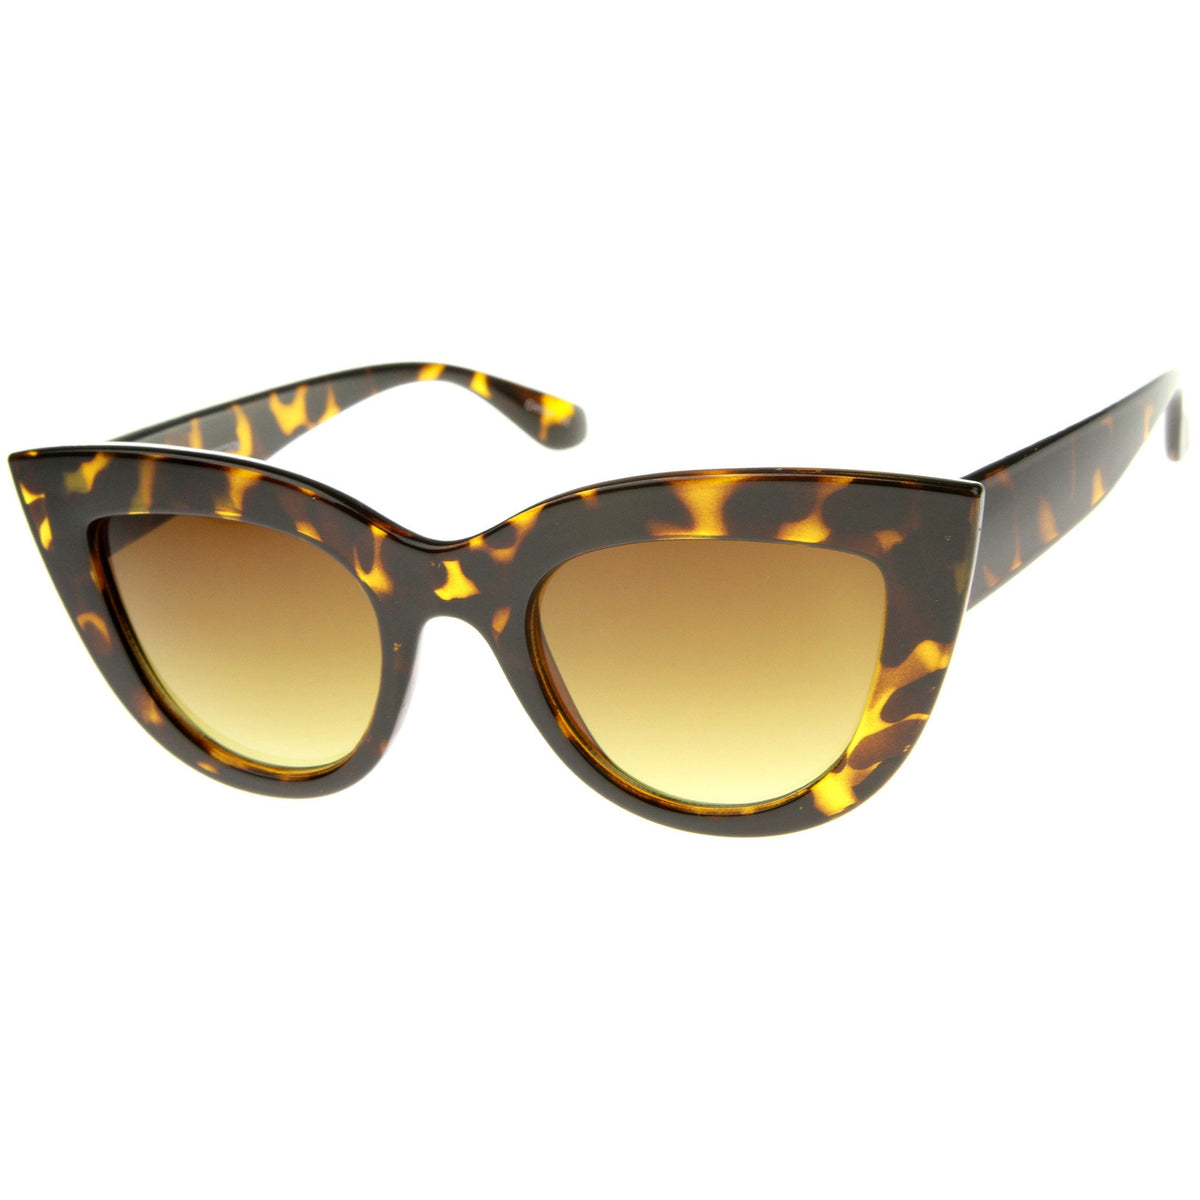 Women's 70's Retro Sharp Cat Eye Sunglasses - zeroUV